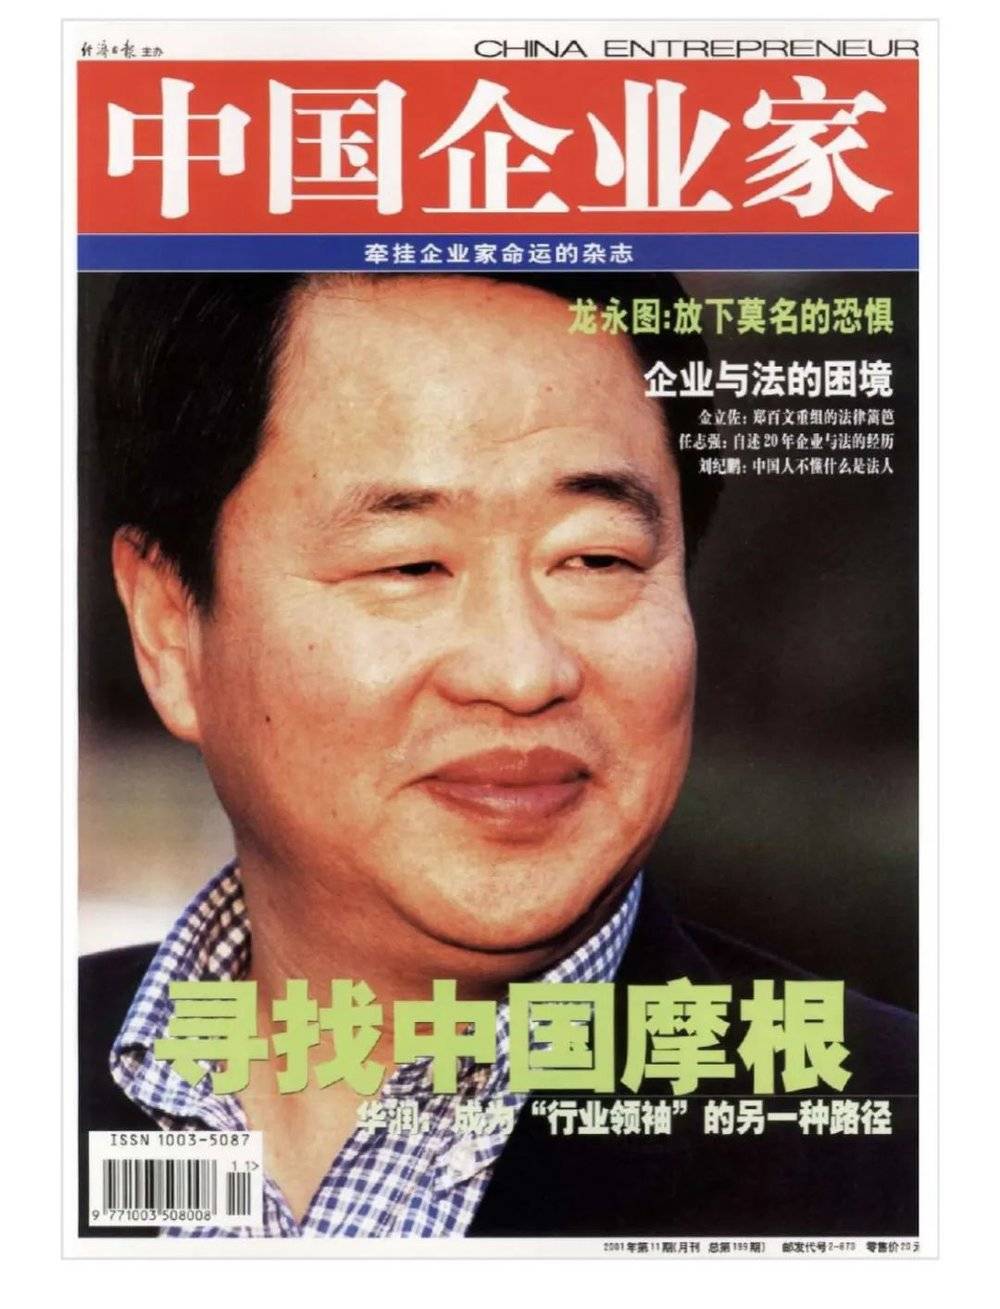 2001年第11期《中国企业家》杂志封面